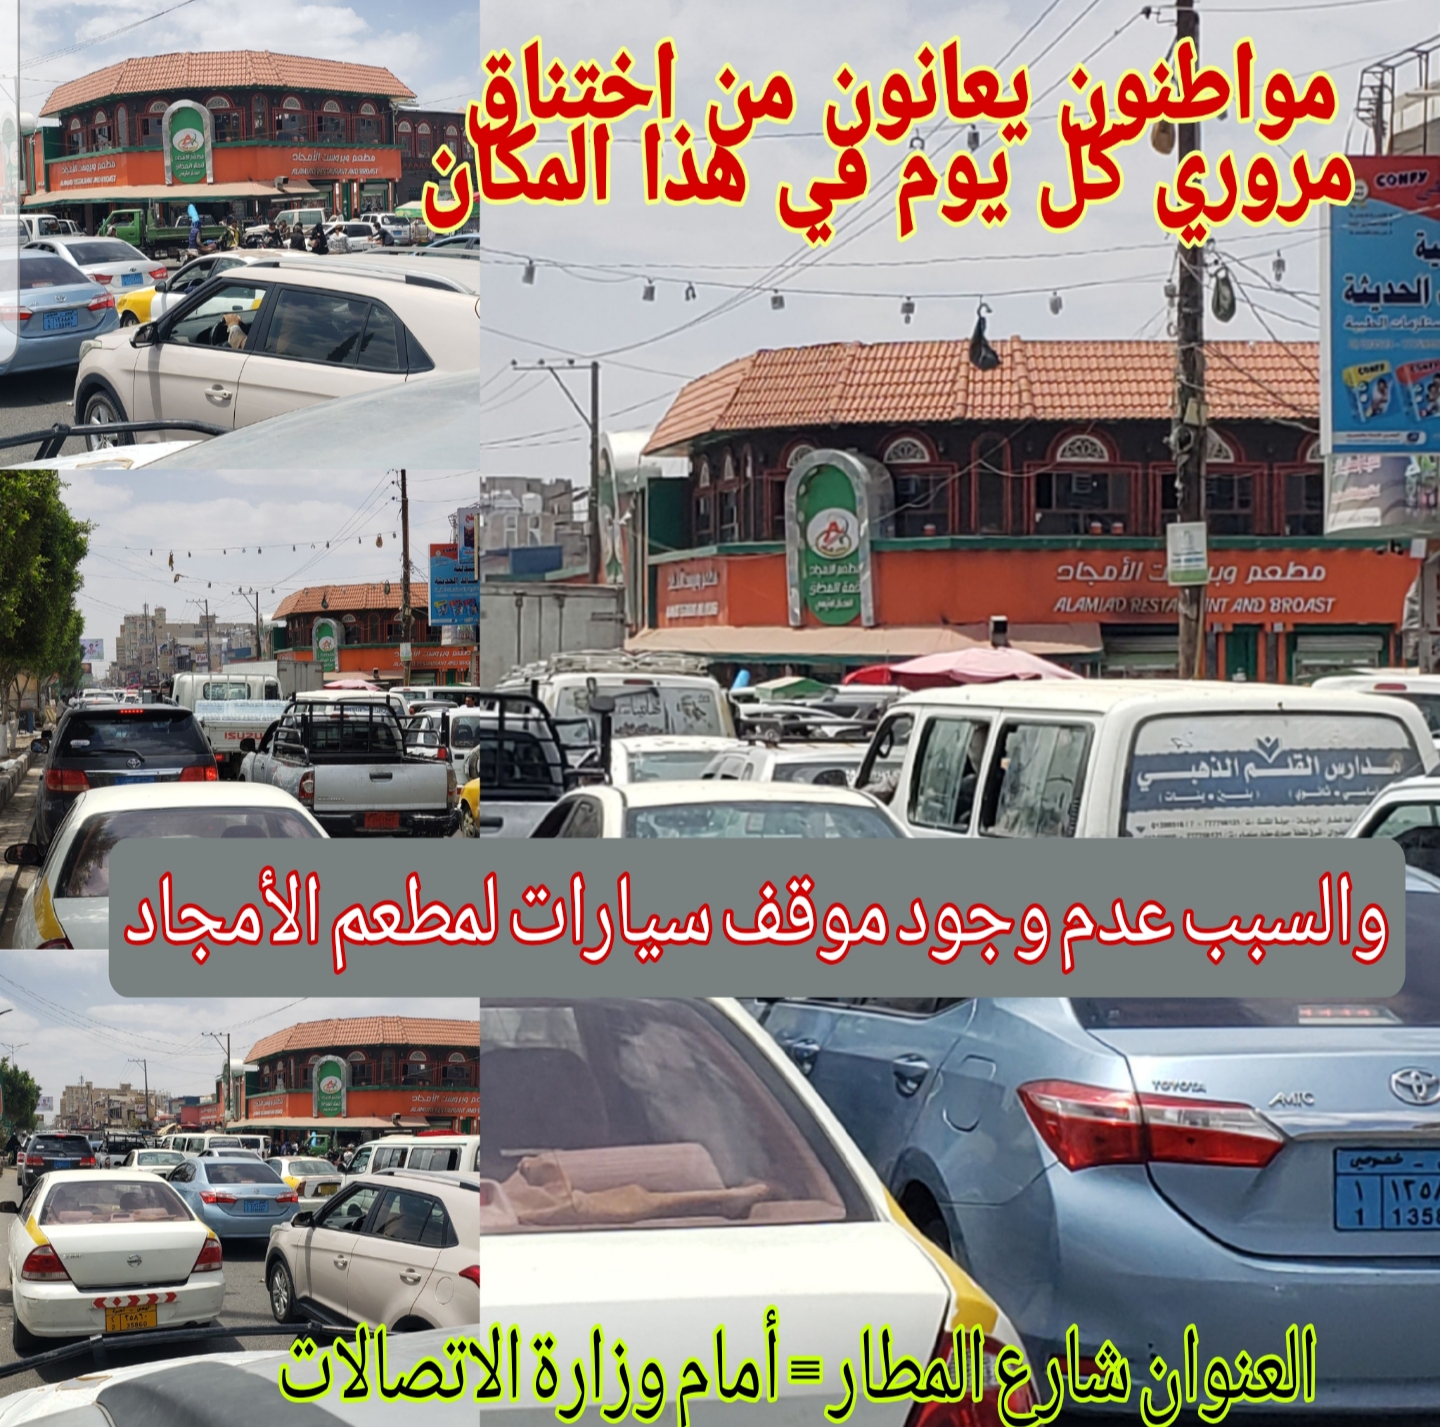 بالصور يملكه أحد قيادات السلطة المحلية مطعم حديث في صنعاء يتسبب بوقف حركة سير المركبات وبحوادث مروعة